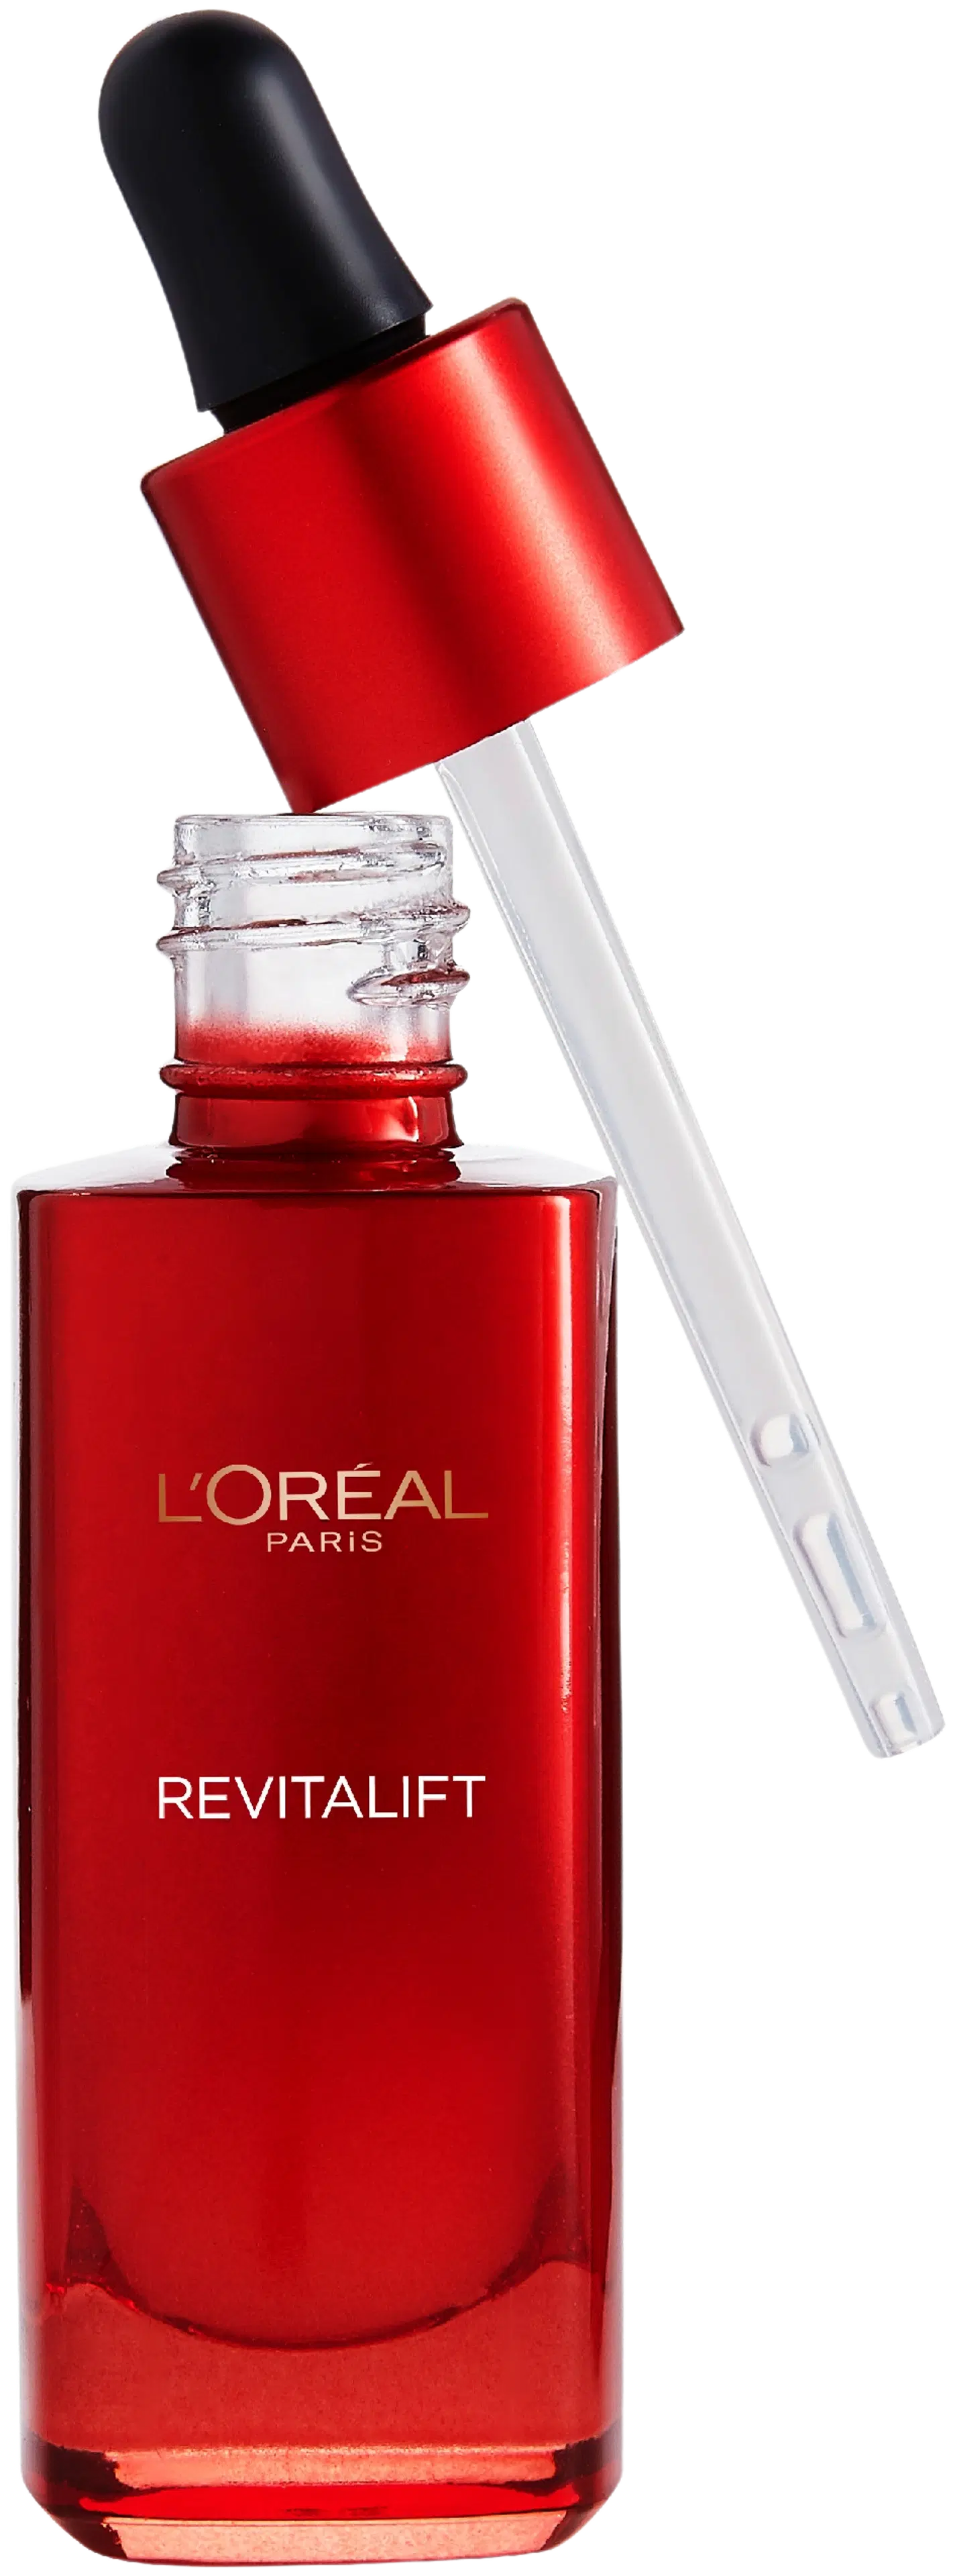 L'Oréal Paris Revitalift ryppyjä silottava ja ihoa kiinteyttävä anti-age seerumi 30ml